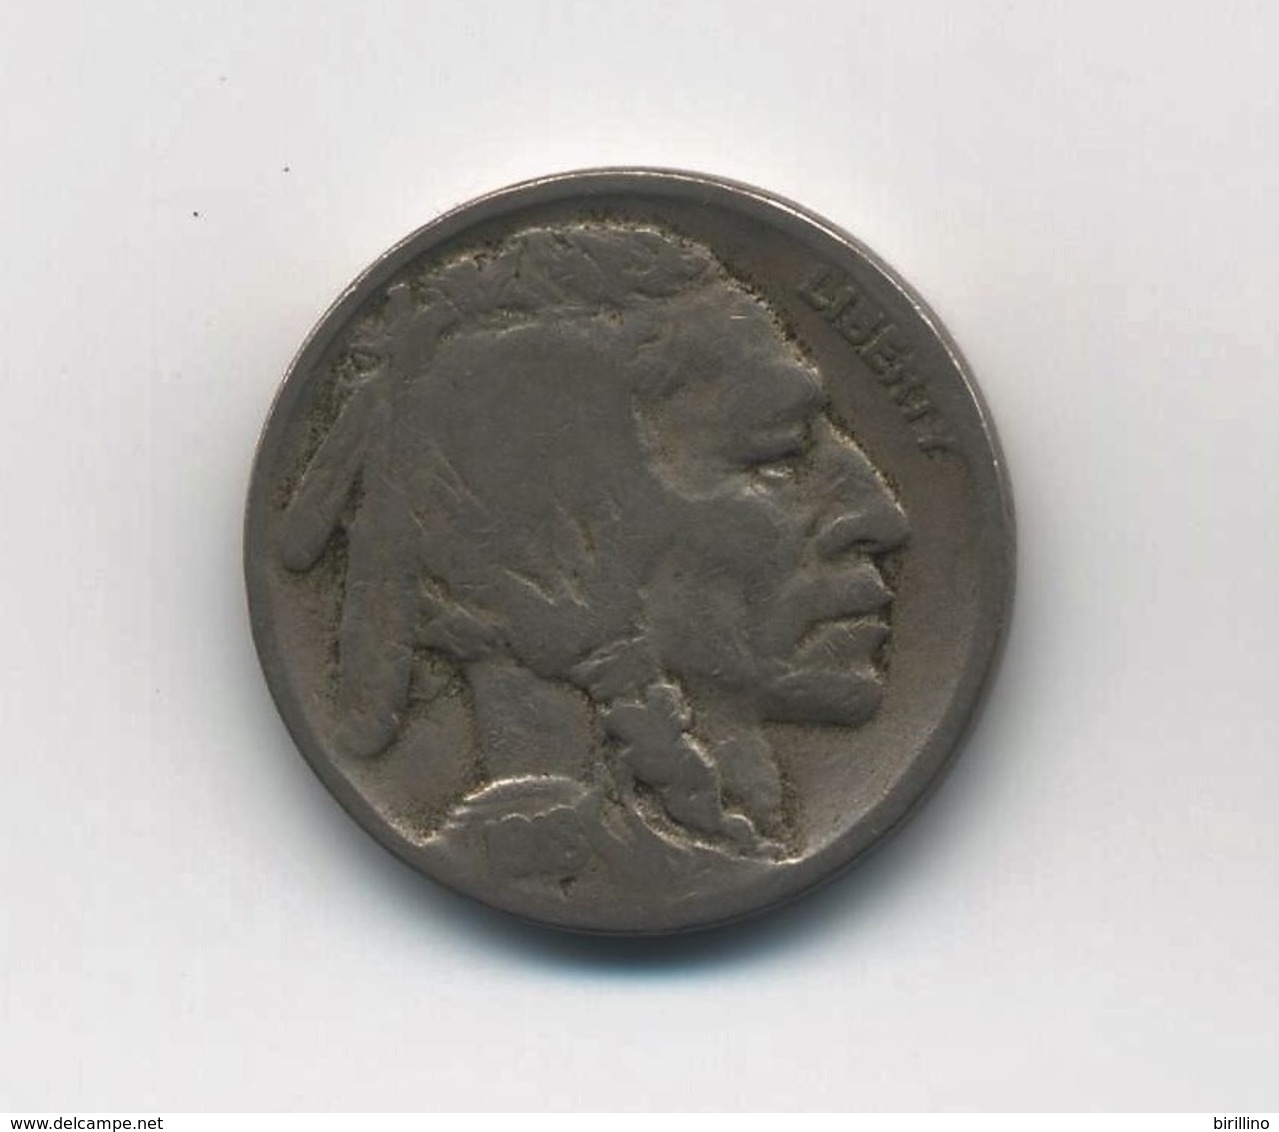 3104 - Lotto di 15 monete 5 cent Buffalo.